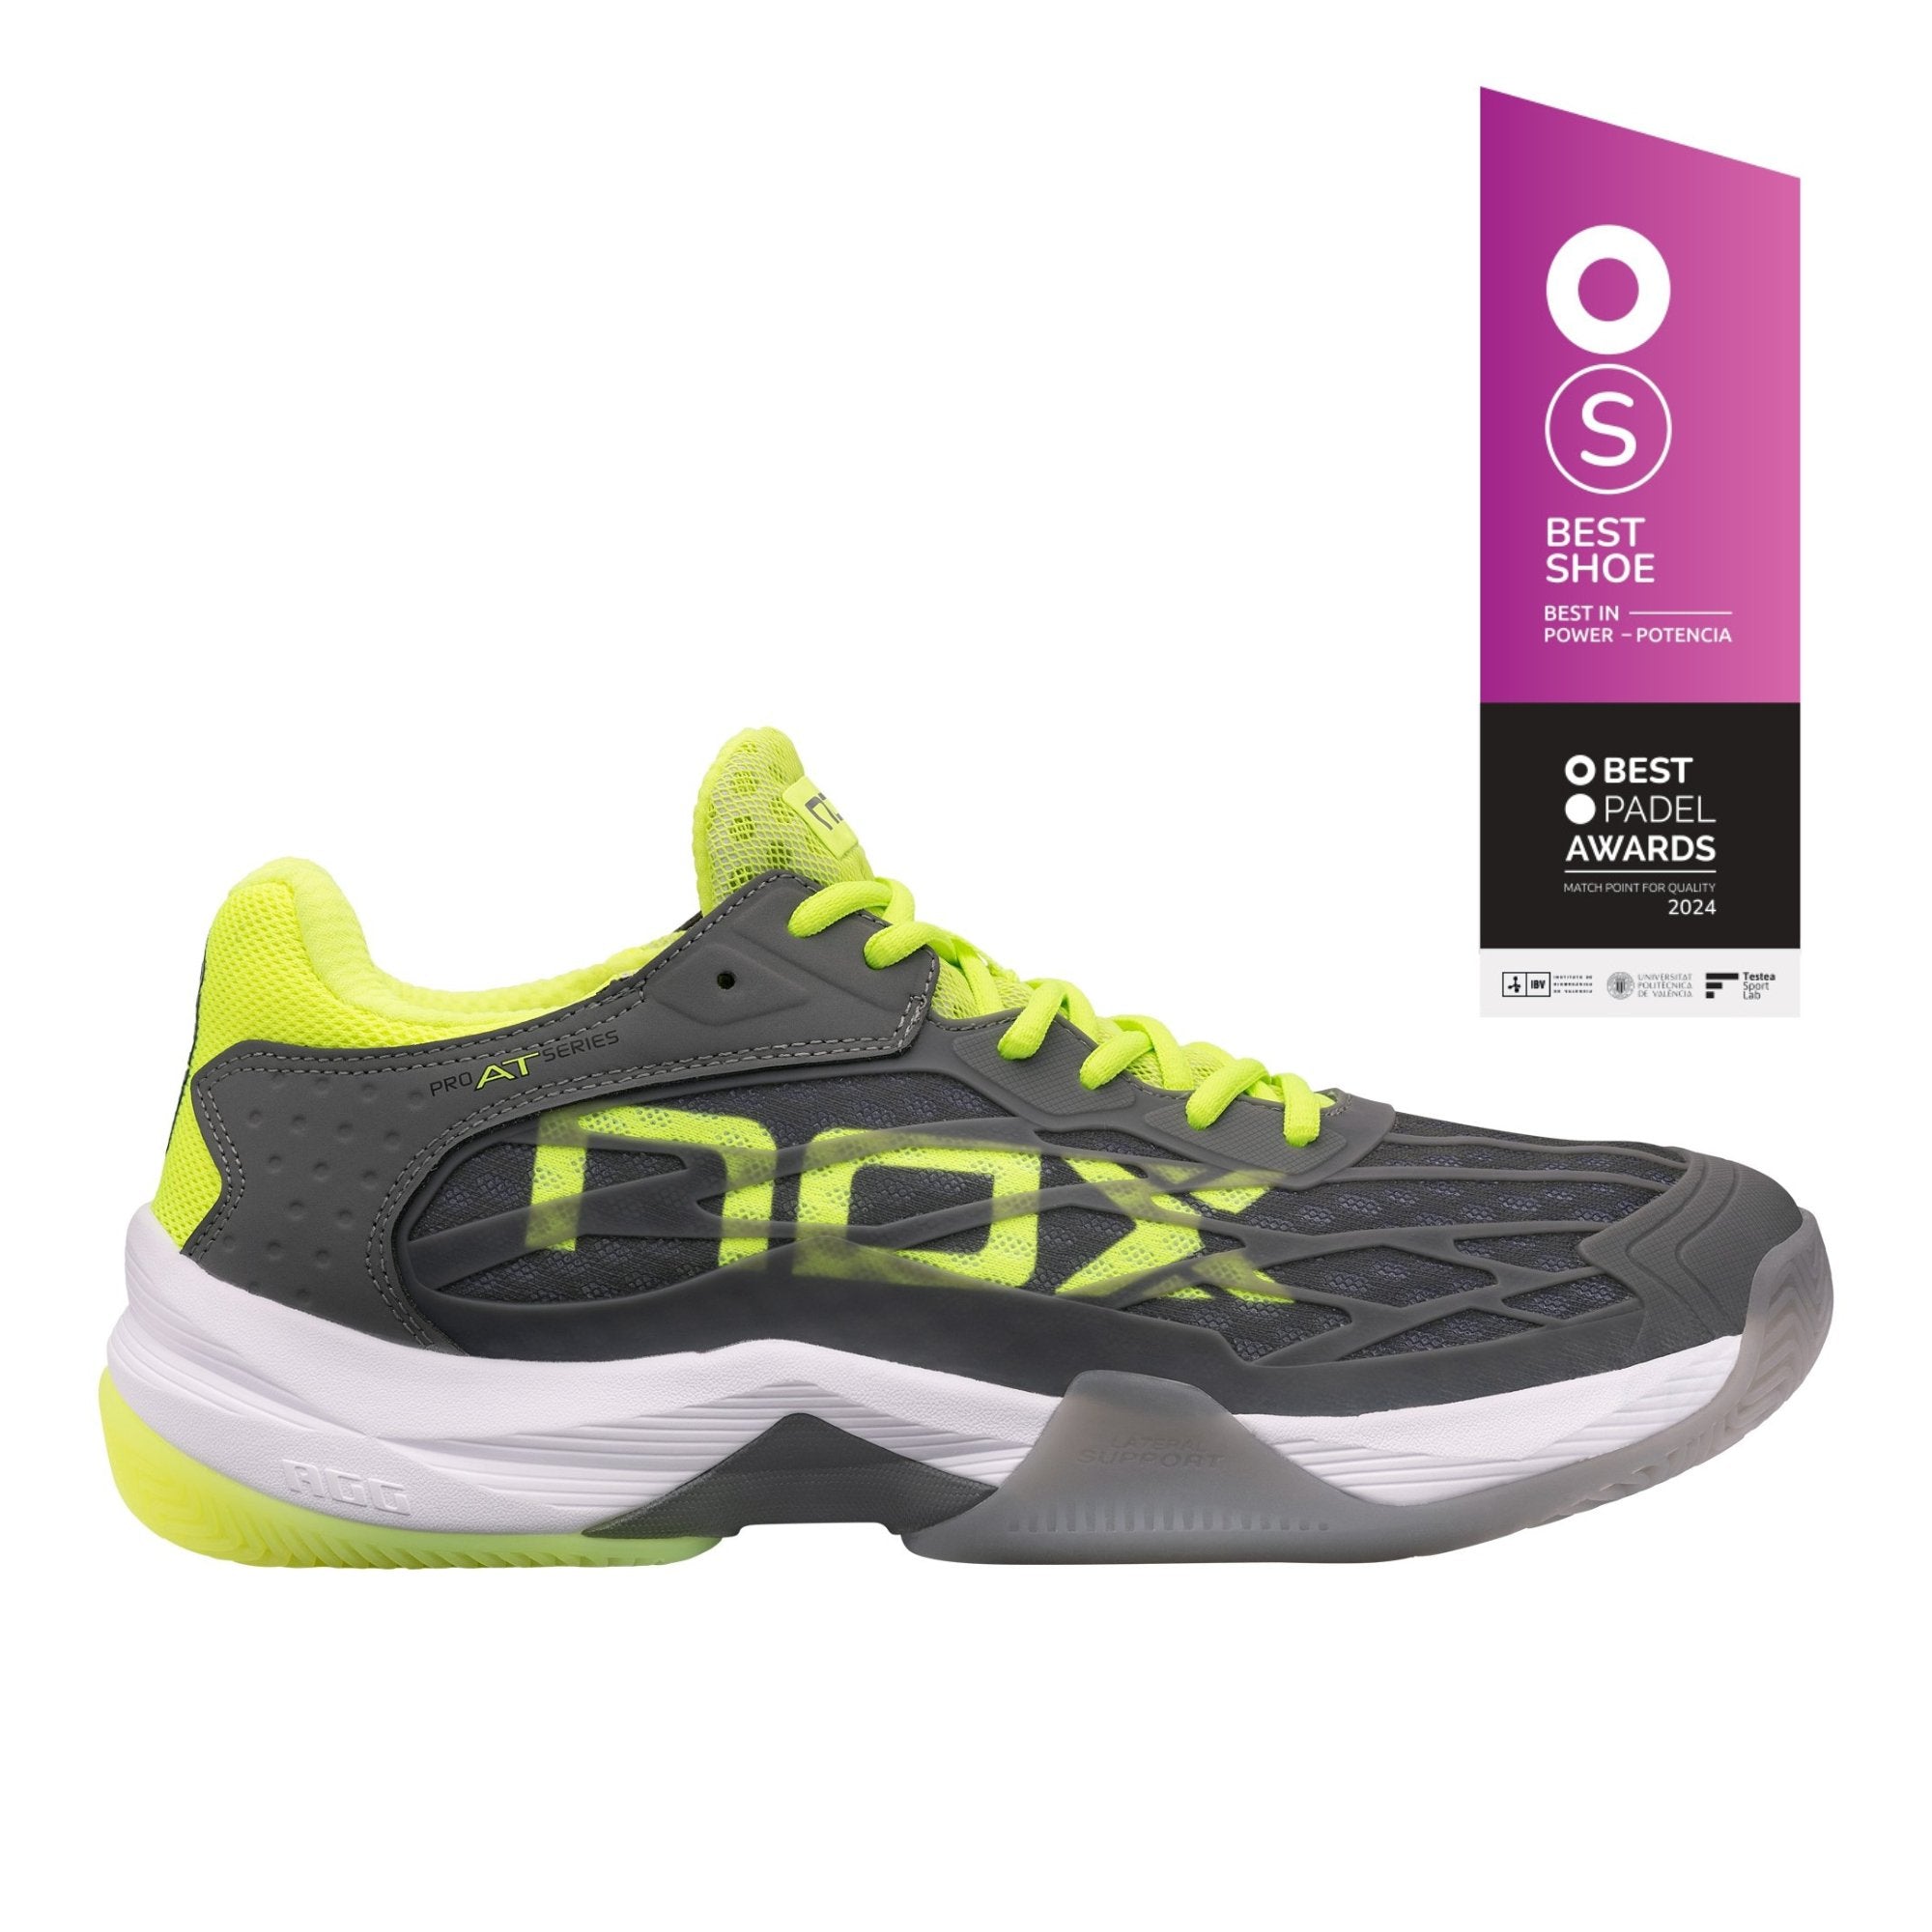 Zapatillas de pádel Nox AT10 LUX Gris/Amarillo Flúor - NOX